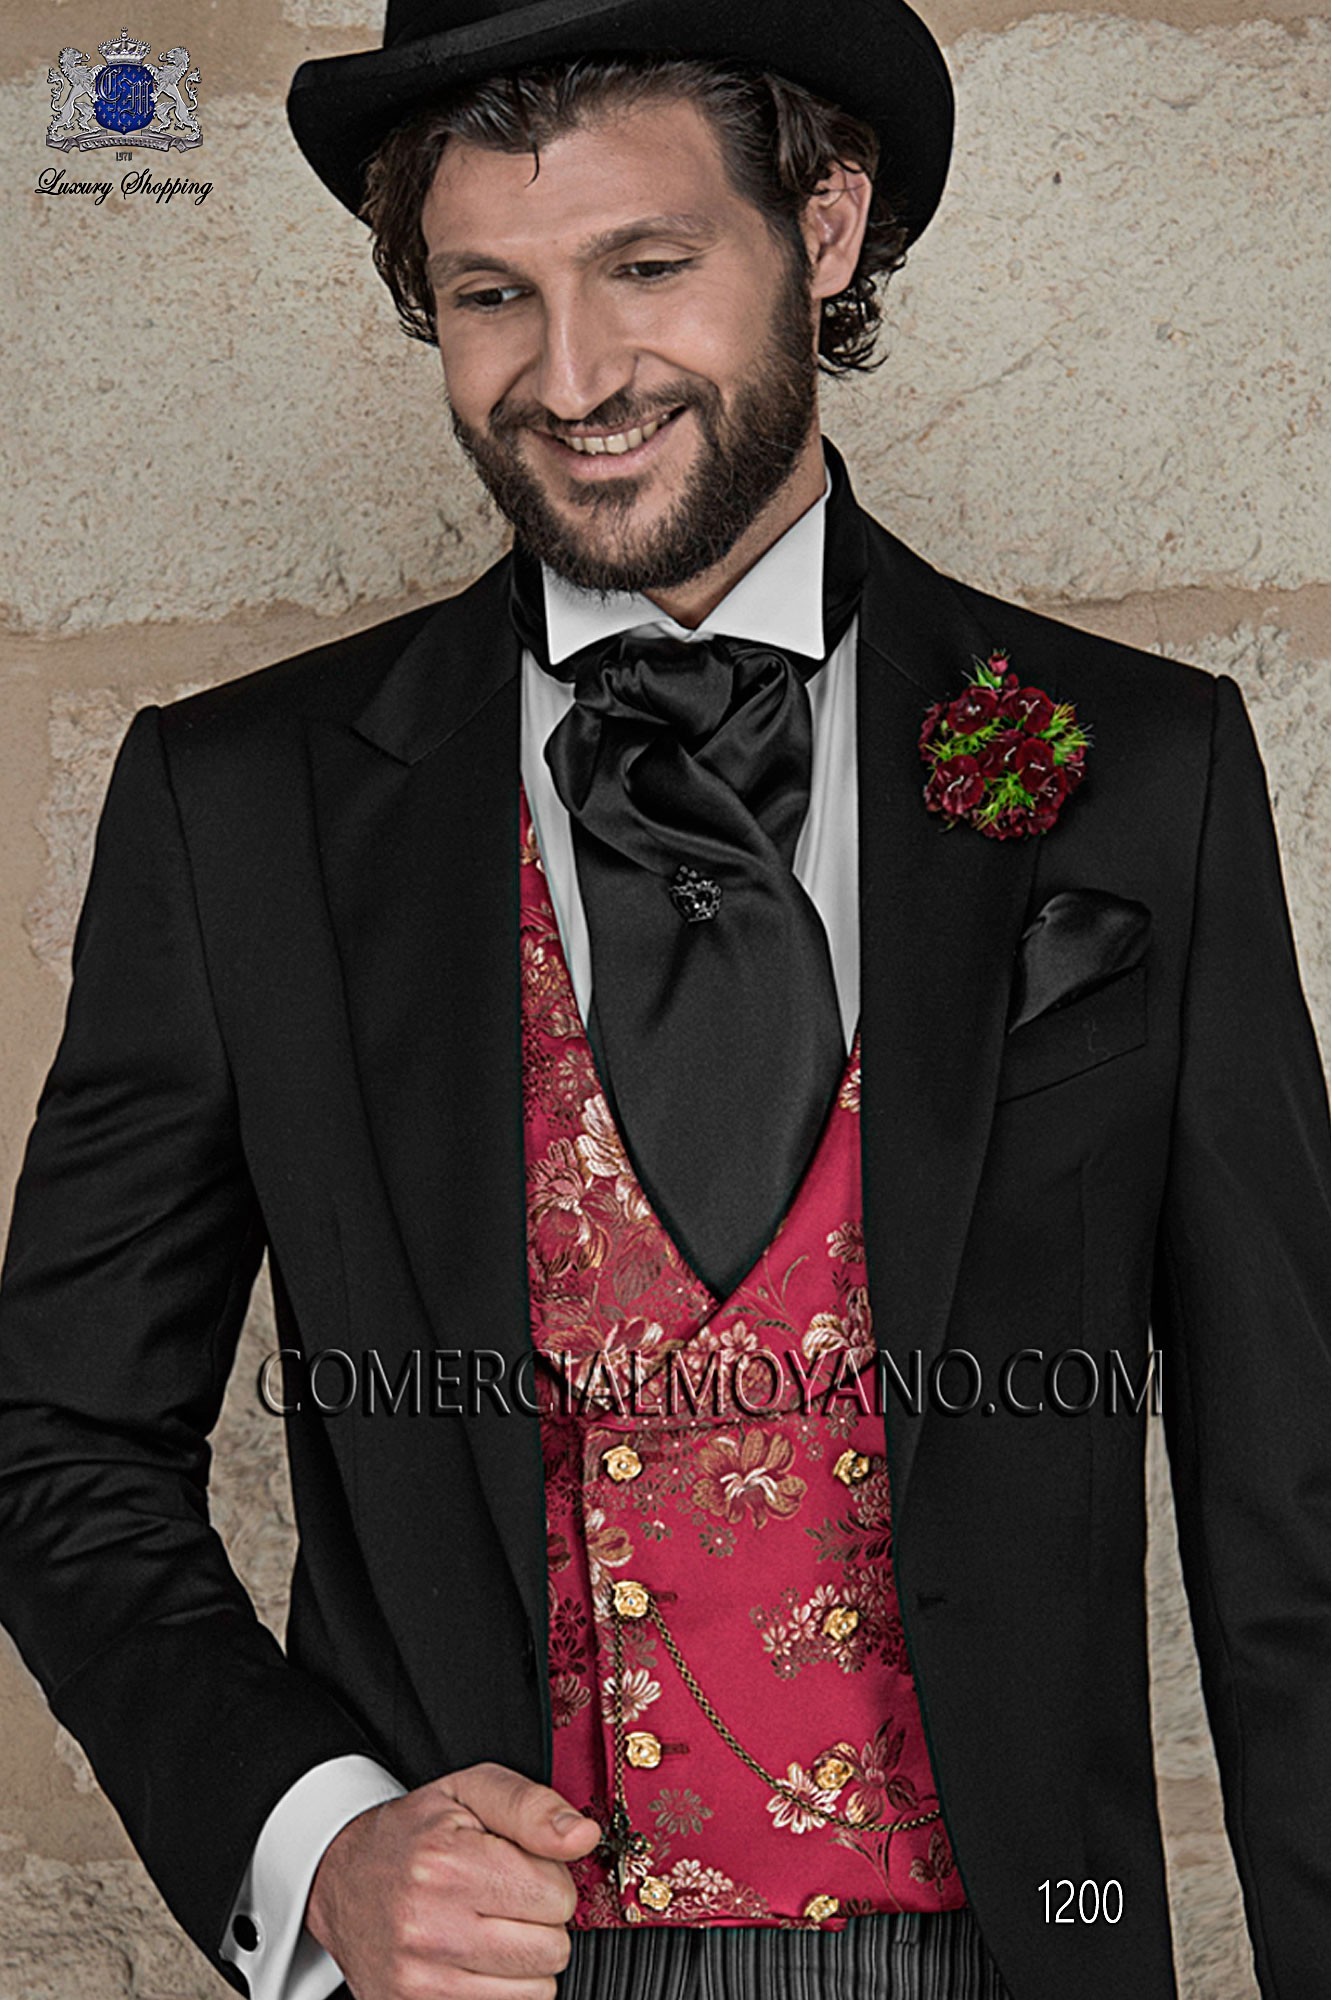 Traje Gentleman de novio negro modelo: 1200 Mario Moyano colección Gentleman